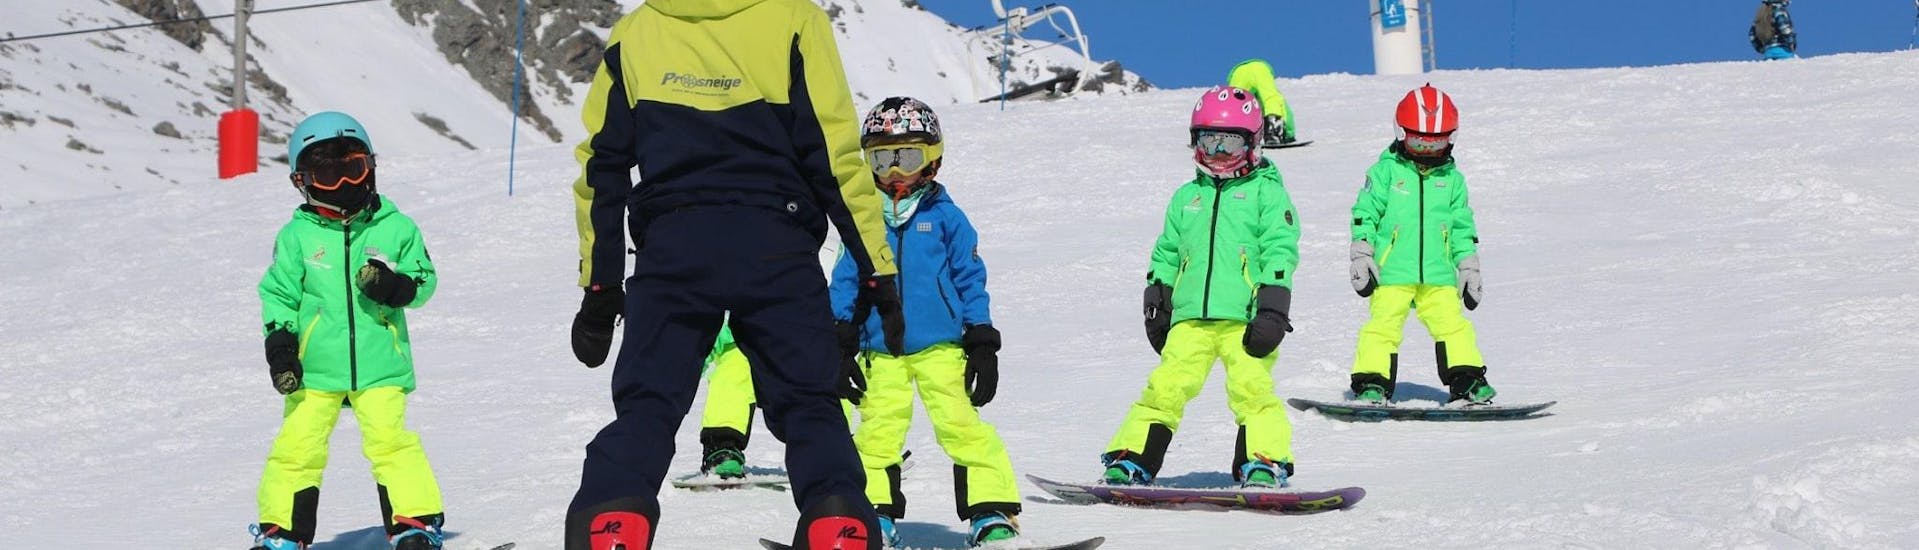 Een ski-instructeur van de skischool Prosneige Alpe d'Huez is lachende kinderen snowboarden aan het leren tijdens Snowboardlessen voor Kinderen van Alle Leeftijden en Alle Niveaus.